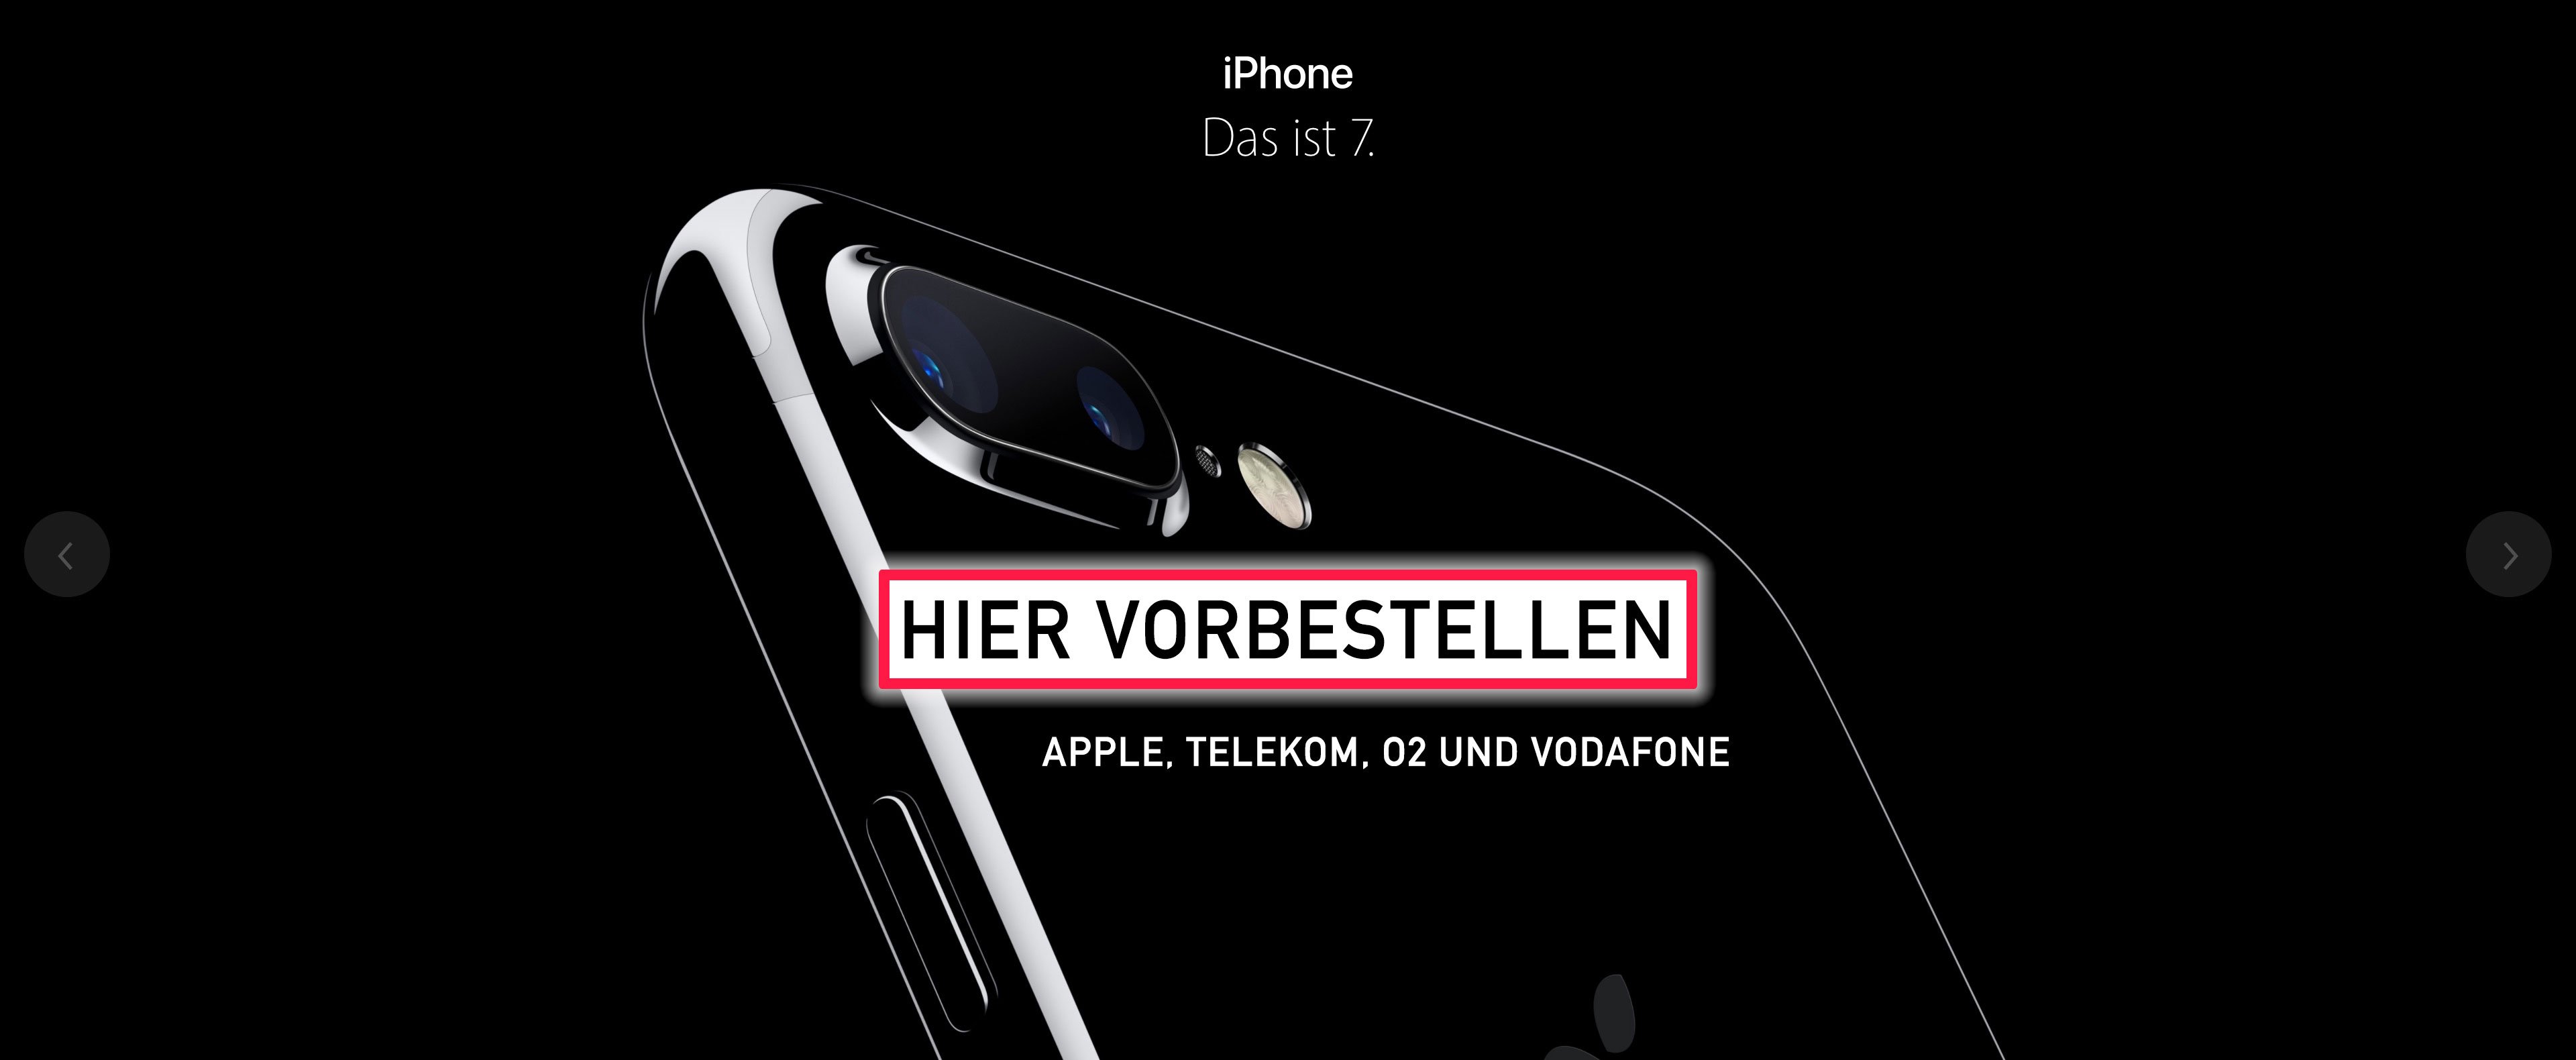 iPhone 7 vorbestellen: iPhone 7 bei O2, Telekom und Vodafone jetzt online erhältlich! 9